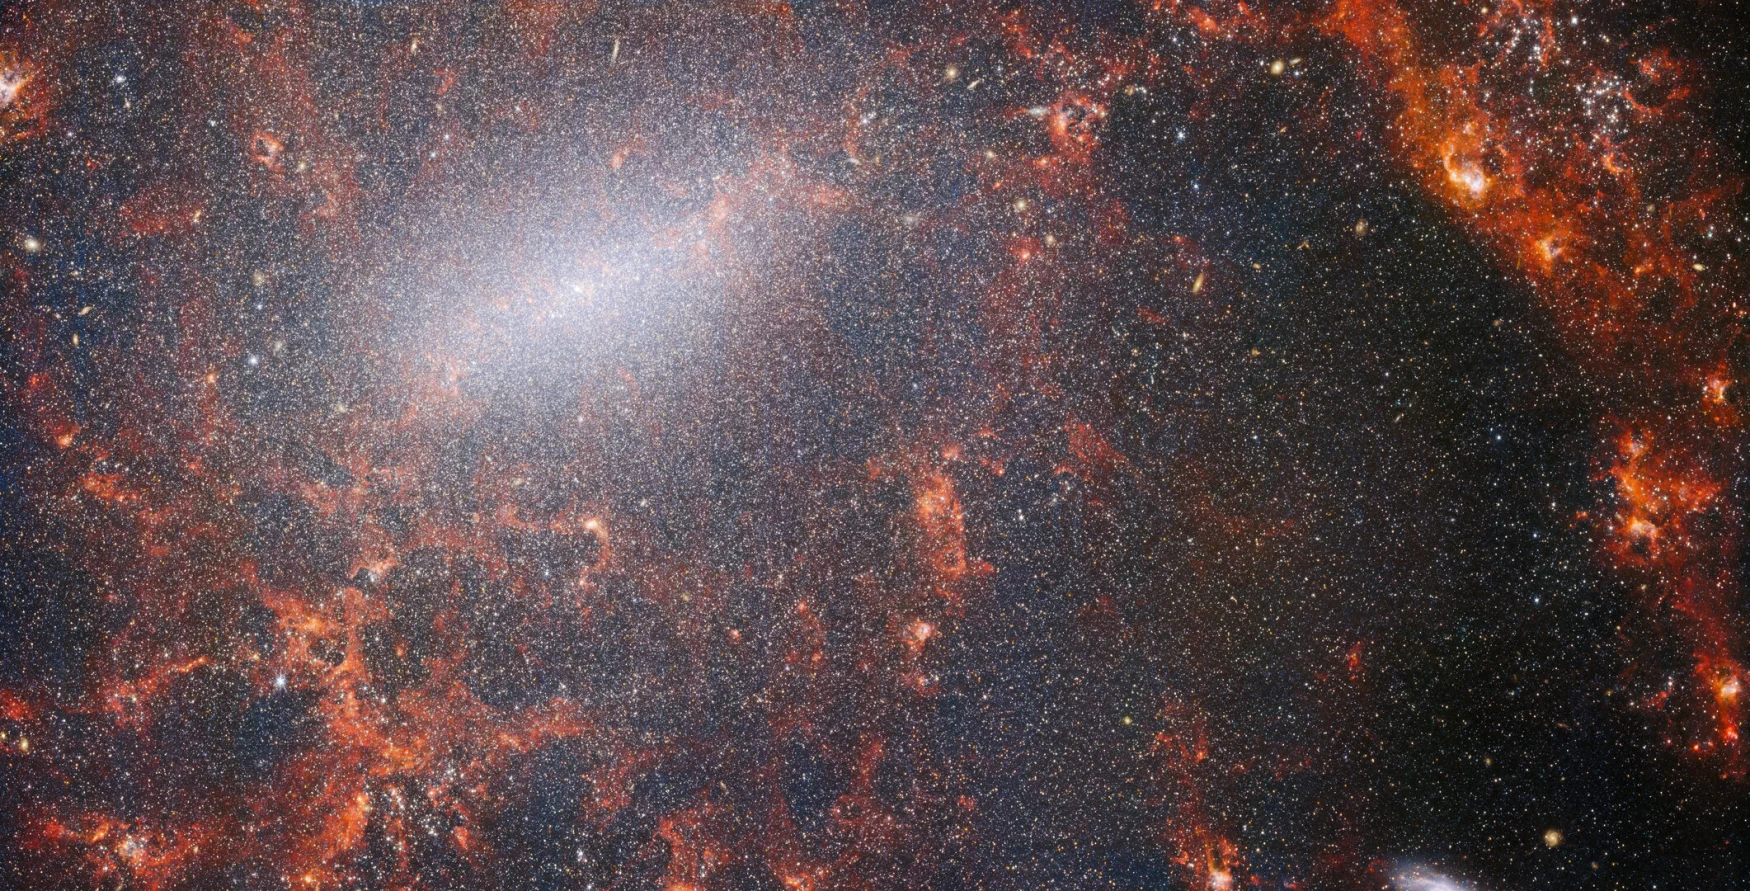 Filamentos finos de poeira e aglomerados de estrelas brilhantes são vistos nesta imagem do Telescópio Espacial James Webb da NASA/ESA/CSA.  Esta visão do instrumento NIRCam de Webb é cravejada com o massivo aglomerado de estrelas da galáxia, o mais densamente compactado ao longo de sua barra central brilhante, junto com nuvens vermelhas de gás iluminadas pelas estrelas jovens dentro.  Essas estrelas cintilantes pertencem à galáxia espiral barrada NGC 5068, que fica a cerca de 17 milhões de anos-luz da Terra, na constelação de Virgem.  Esta imagem de NGC 5068 faz parte de uma campanha para criar um tesouro astronômico, um repositório para observações de formação estelar em galáxias próximas.  Joias anteriores desta coleção podem ser vistas aqui e aqui.  Essas observações são particularmente valiosas para os astrônomos por dois motivos.  A primeira é que a formação de estrelas sustenta muitas áreas da astronomia, desde a física de plasmas interestelares fracos até a evolução de galáxias inteiras.  Ao observar a formação de estrelas em galáxias próximas, os astrônomos esperam iniciar um grande avanço científico com alguns dos primeiros dados disponíveis do Webb.  A segunda razão é que as observações de Webb são baseadas em outros estudos usando telescópios, incluindo o Telescópio Espacial Hubble da NASA/ESA e alguns dos observatórios terrestres mais capazes do mundo.  Webb coletou imagens de 19 galáxias próximas de formação de estrelas, que os astrônomos conseguiram combinar com os catálogos do Hubble de 10.000 aglomerados estelares, mapeou espectralmente 20.000 nebulosas de emissão estelar do Very Large Telescope (VLT) e observou 12.000 de nebulosas escuras.  , densas nuvens moleculares identificadas pelo Atacama Large Millimeter/Submillimeter Array (ALMA).  Essas observações abrangem o espectro eletromagnético e dão aos astrônomos uma oportunidade sem precedentes de juntar os detalhes da formação estelar.  Esta imagem infravermelha da galáxia é preenchida com o enorme aglomerado de estrelas antigas que compõem o núcleo de NGC 5068. A visão nítida da NIRCam permite que os astrônomos olhem através do gás e poeira da galáxia para examinar suas estrelas mais de perto.  Ao longo do caminho dos braços espirais estão densas e brilhantes nuvens de poeira: são regiões H II, aglomerados de gás hidrogênio onde novas estrelas estão se formando.  Estrelas ativas e energéticas ionizam o hidrogênio ao seu redor, que, quando combinado com a emissão de poeira quente, produz aquele brilho avermelhado.  As regiões H II são um grande alvo para os astrônomos, e os instrumentos de Webb são as ferramentas perfeitas para examiná-las, resultando nesta imagem. [Image Description: A close-in image of a spiral galaxy, showing its core and part of a spiral arm. At this distance thousands upon thousands of tiny stars that make up the galaxy can be seen. The stars are most dense in a whitish bar that forms the core, and less dense out from that towards the arm. Bright red gas clouds follow the twist of the galaxy and the spiral arm.] Links NGC 5068 (imagem NIRCam + MIRI) 